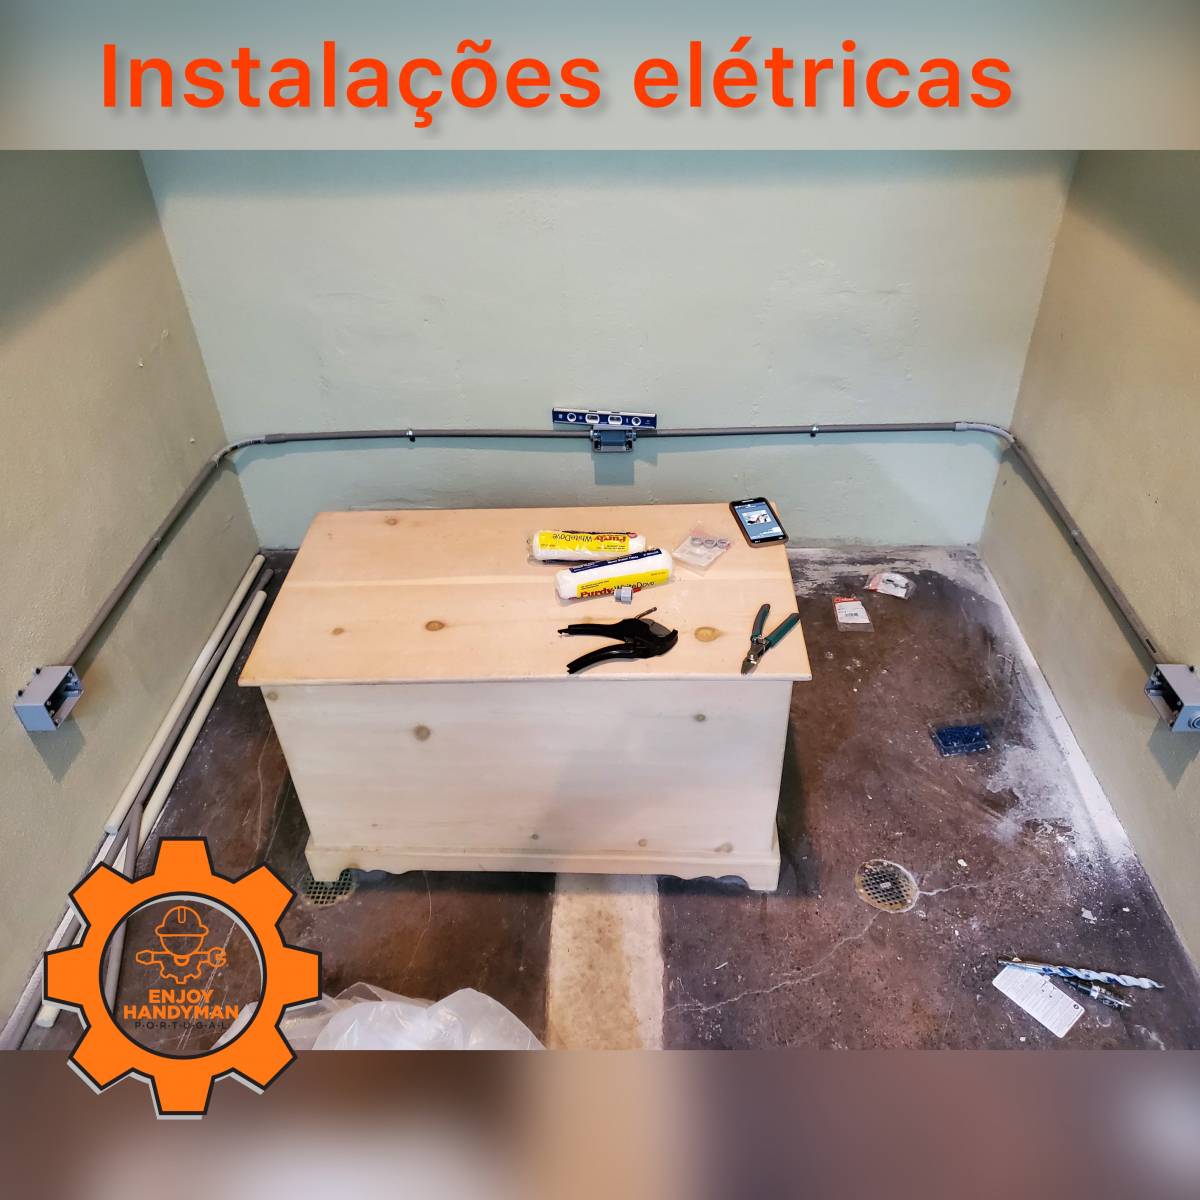 Enjoy Handyman Portugal (JorgeLuiz&EnedinnaSantos) - Vila Nova de Gaia - Bricolage e Mobiliário